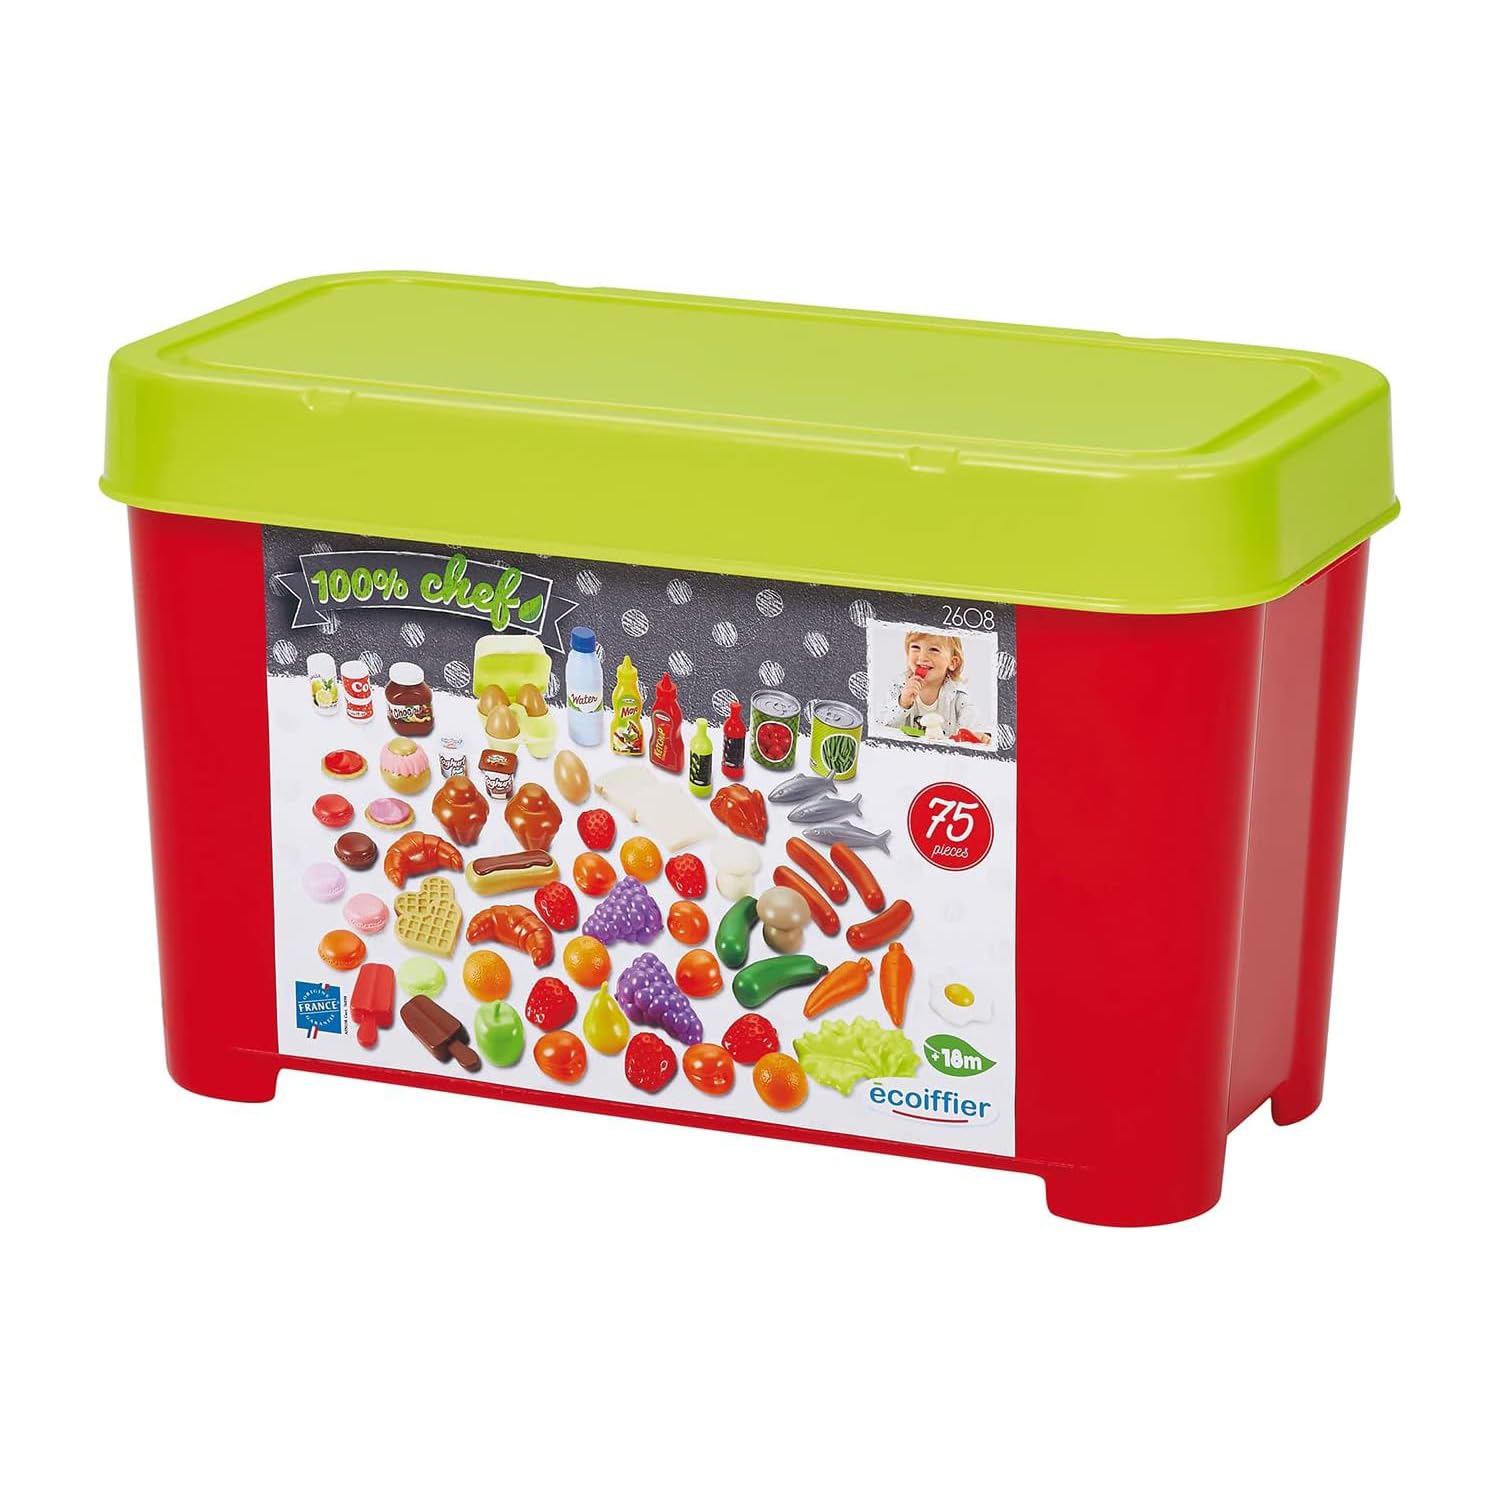 Ecoiffier - 75tlg. Lebensmittel-Set - für Kinder ab 18 Monaten, ideales Zubehör-Paket für Kaufladen oder Spielküche, mit Obst, Gemüse, Fleisch, u.v.m.